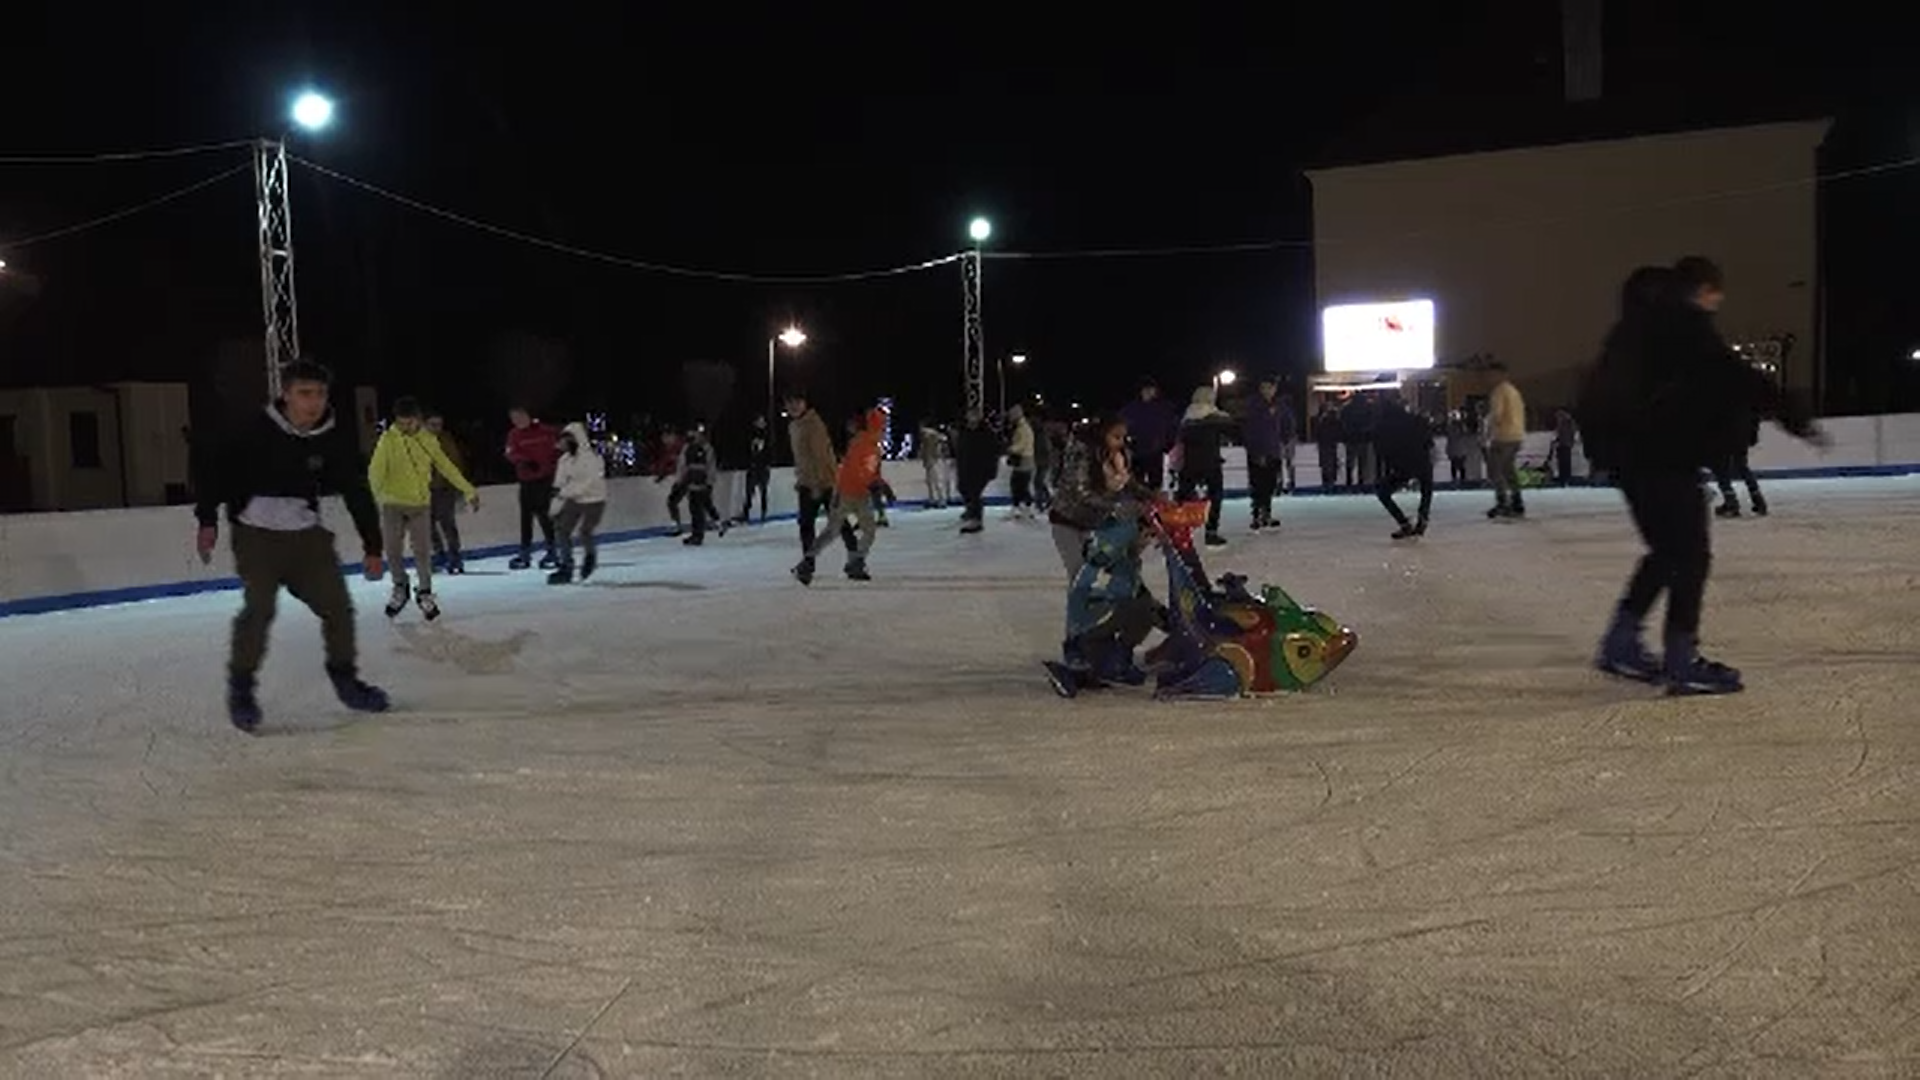 S-a dat startul distracţiei pe gheaţă la Târgu Mureş. Două patinoare și-au deschis porțile